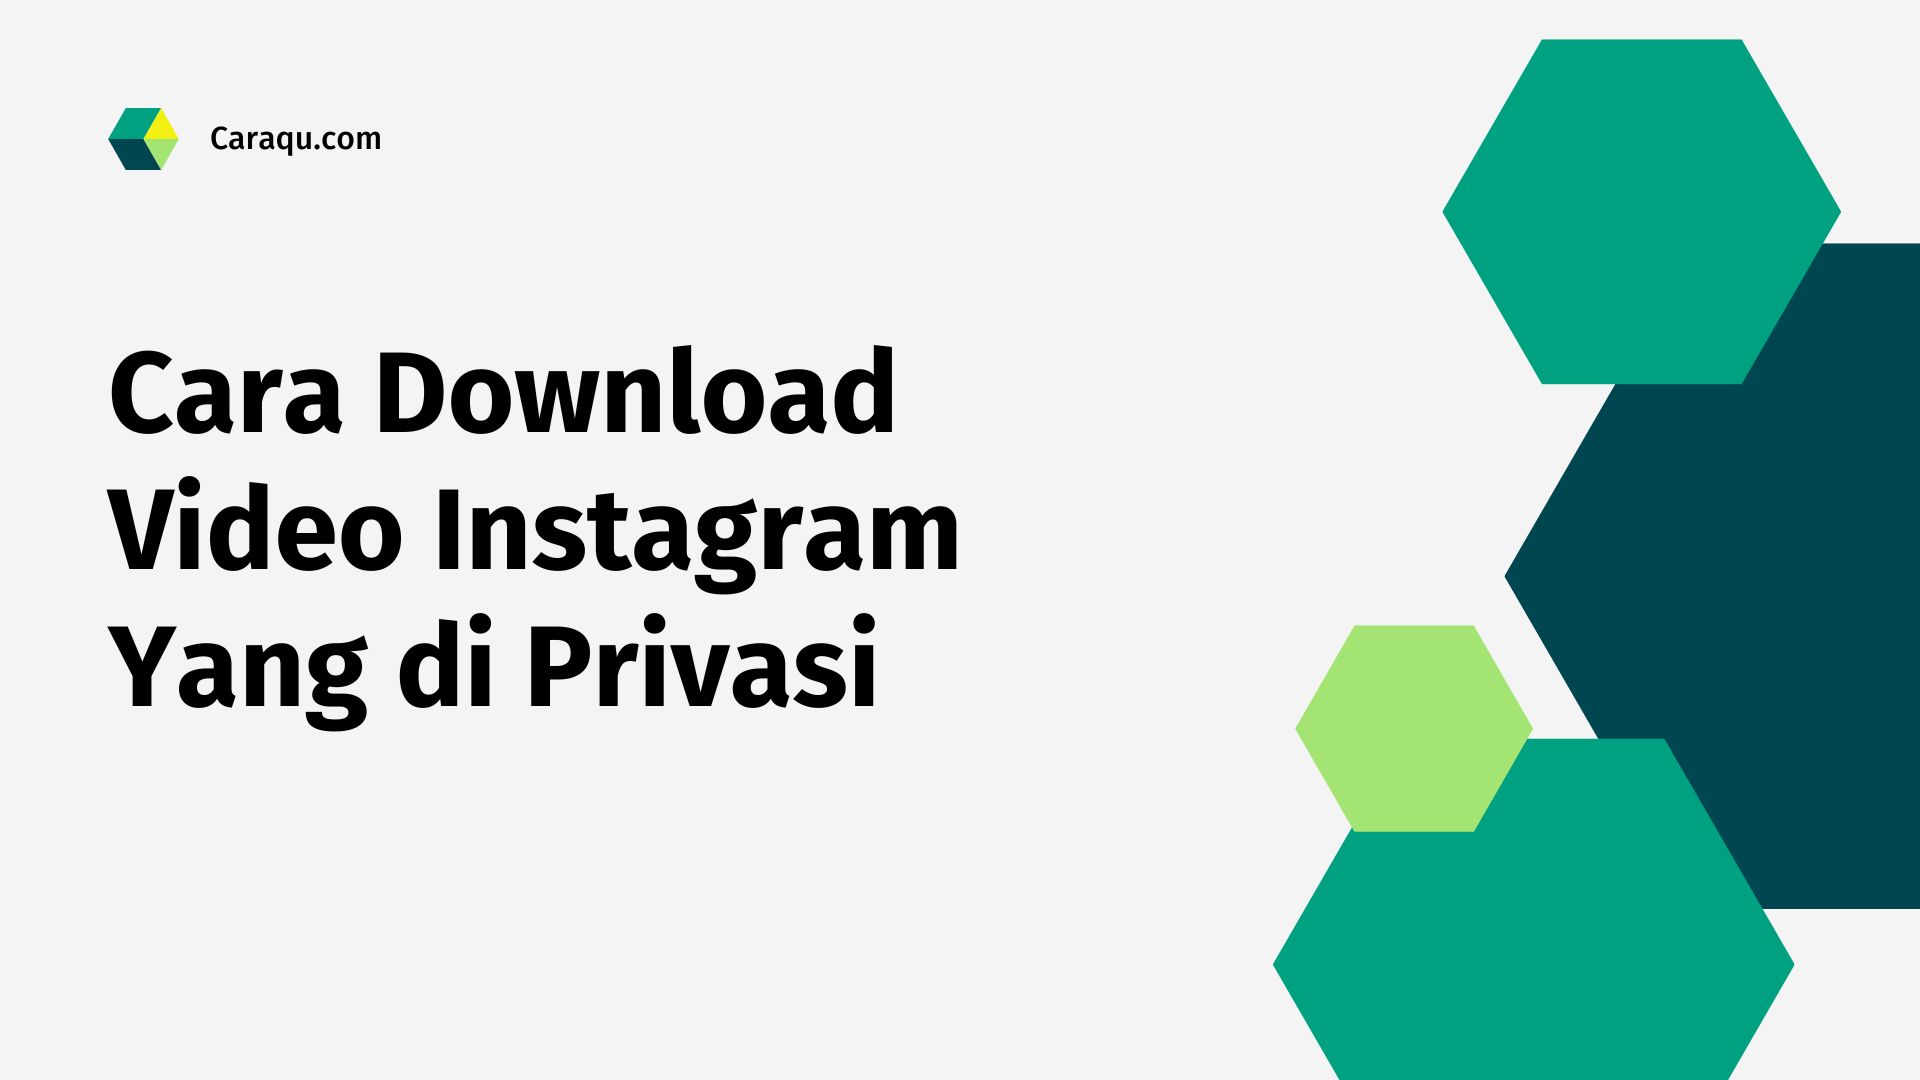 Cara Download Video Instagram Yang di Privasi